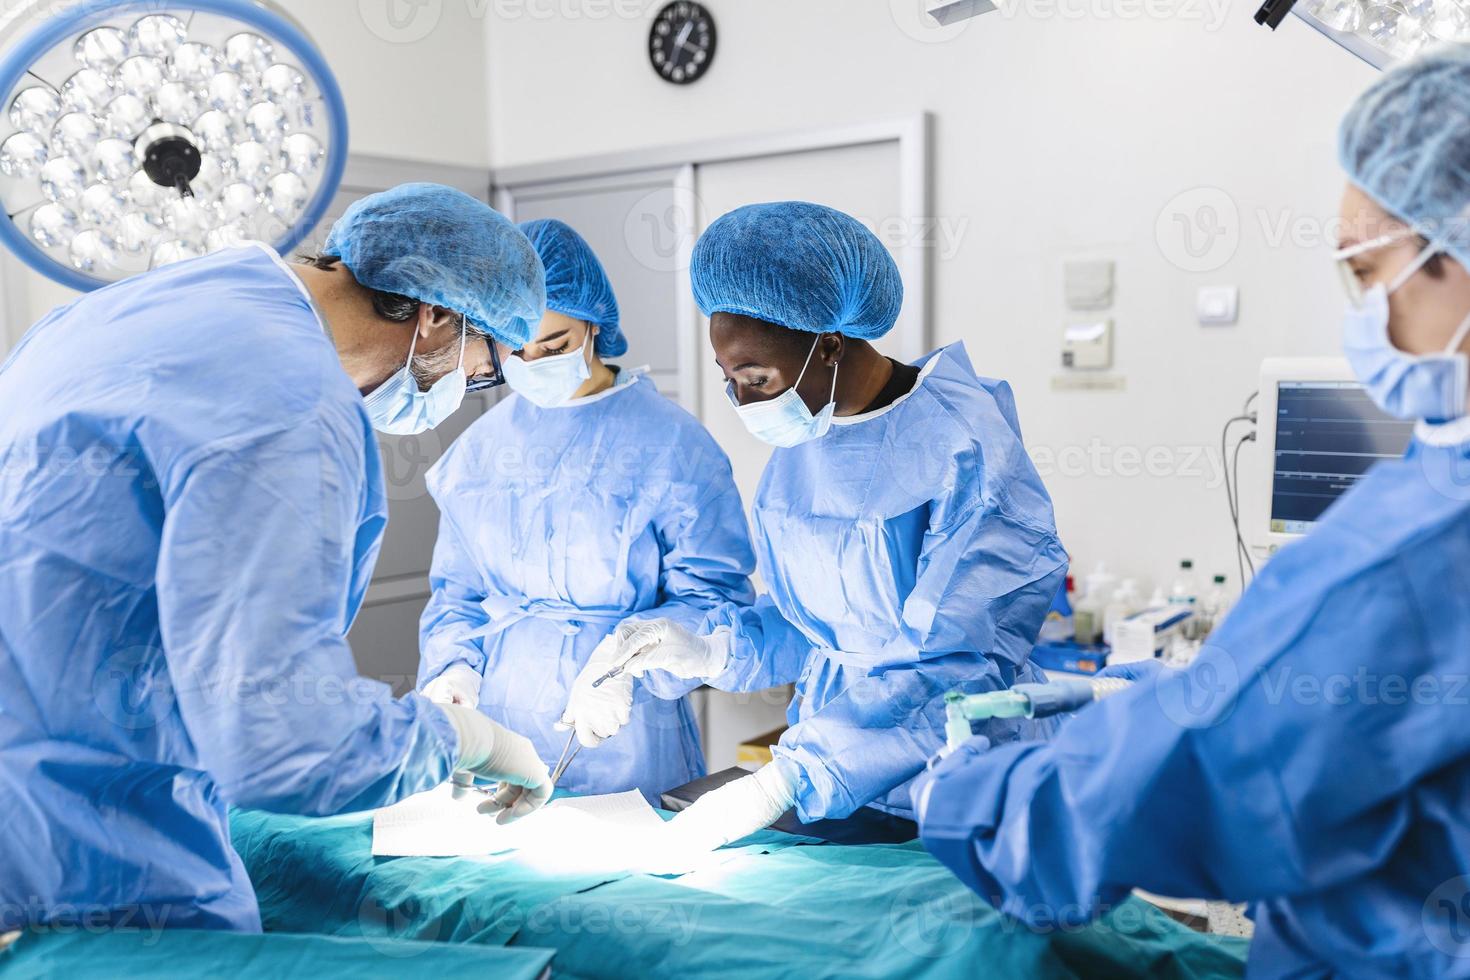 OP-Team, das Operationen in einem modernen Operationssaal durchführt, Ärzteteam, das sich während einer Operation auf einen Patienten konzentriert, Ärzteteam, das während einer Operation im Operationssaal zusammenarbeitet, foto